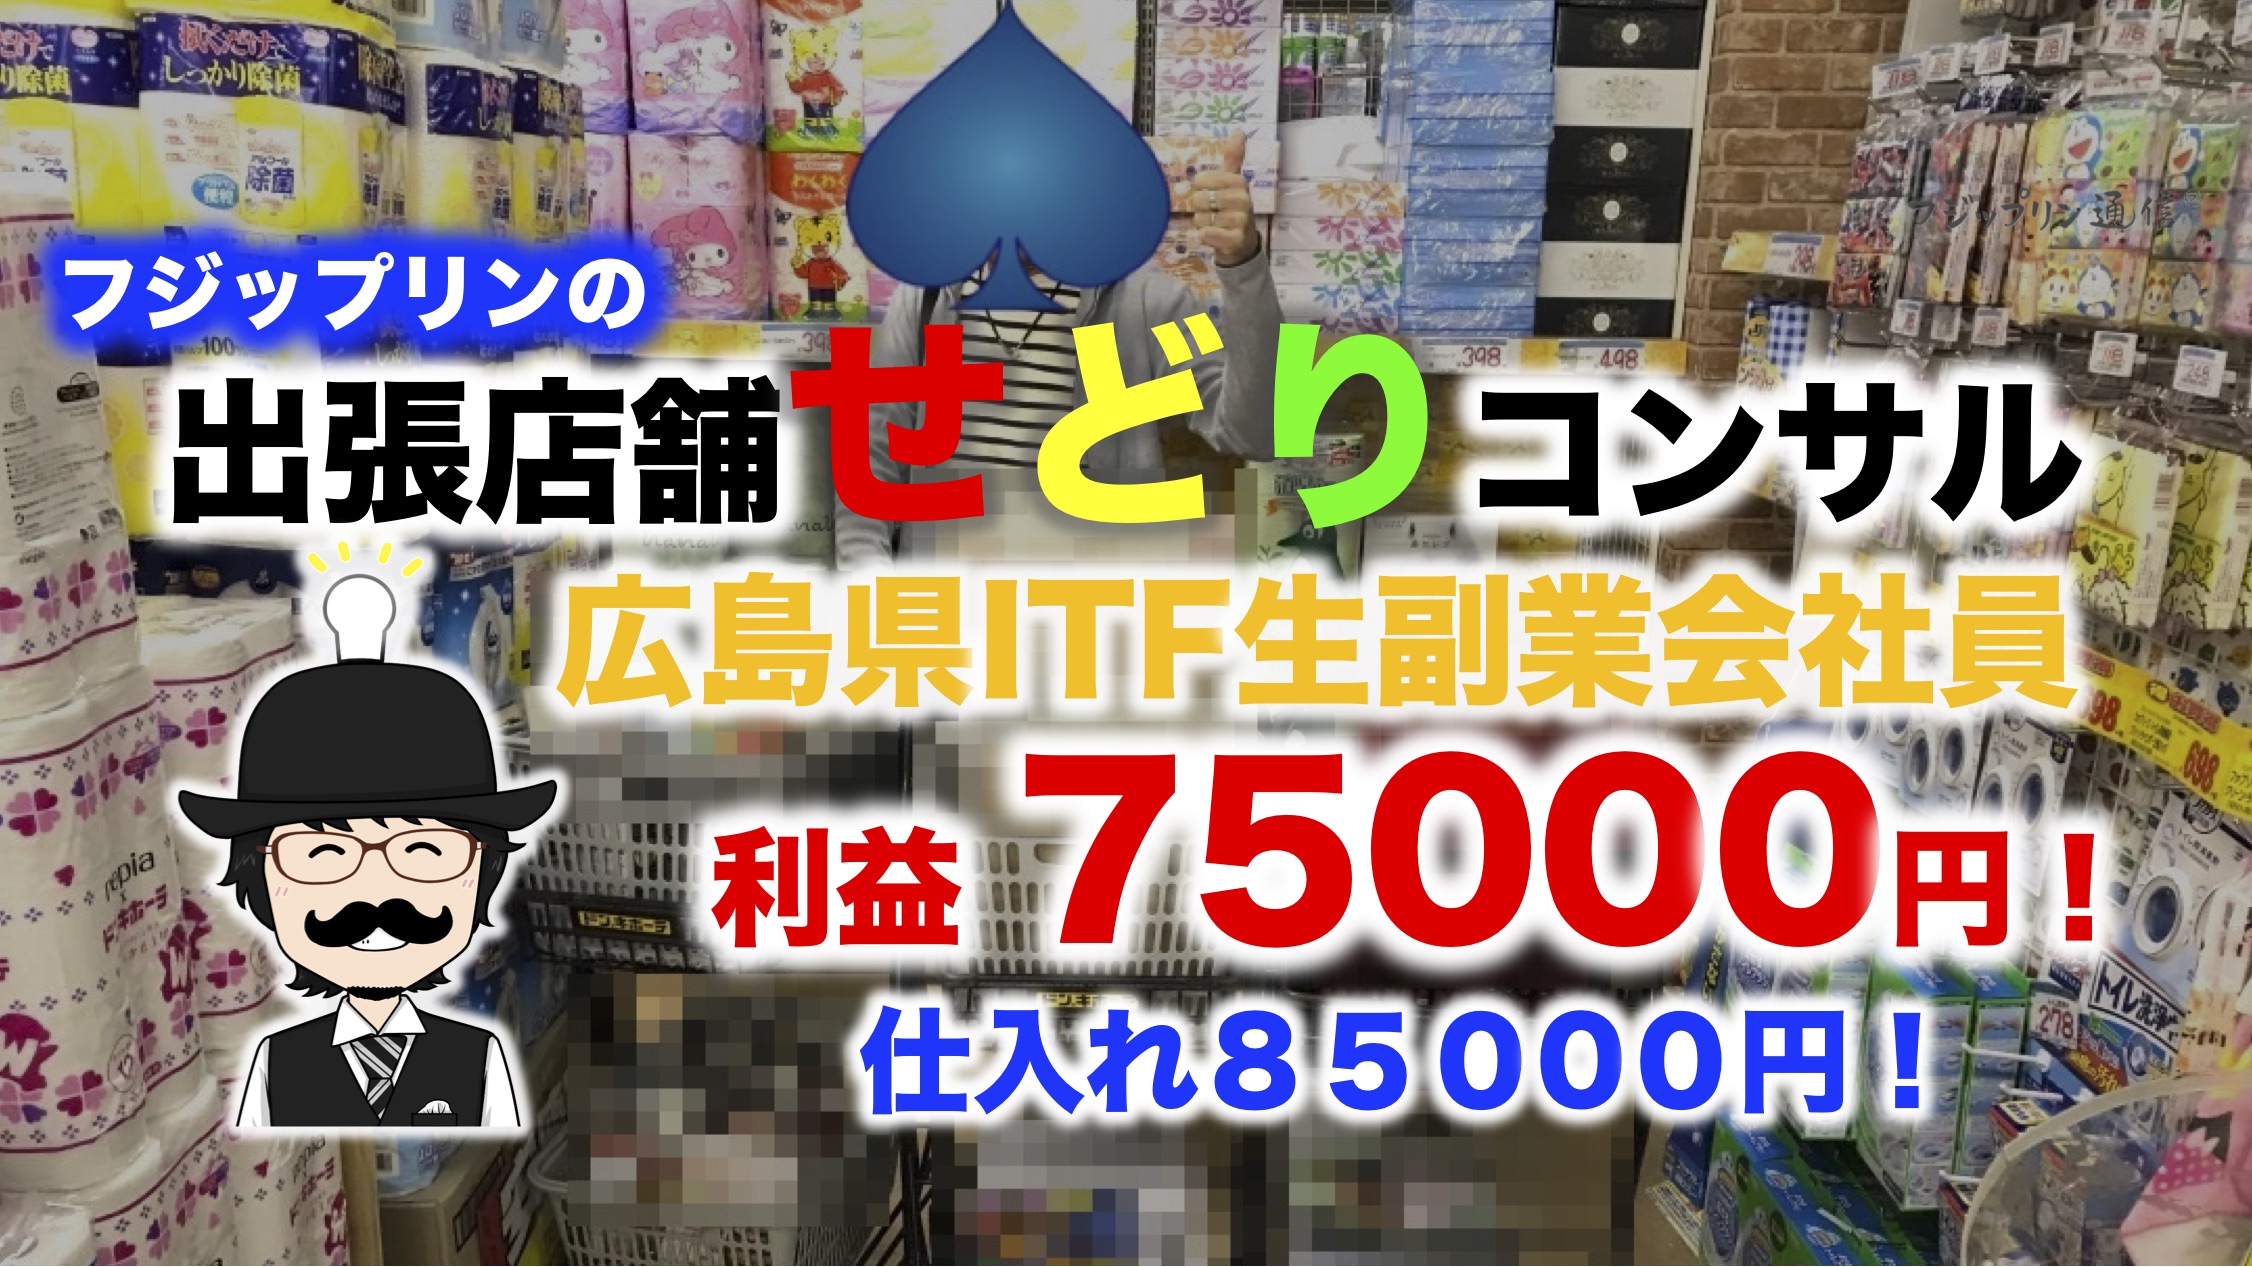 広島で店舗せどり仕入れ同行コンサルの報告。利益75000円仕入れ85000円の内容とは。